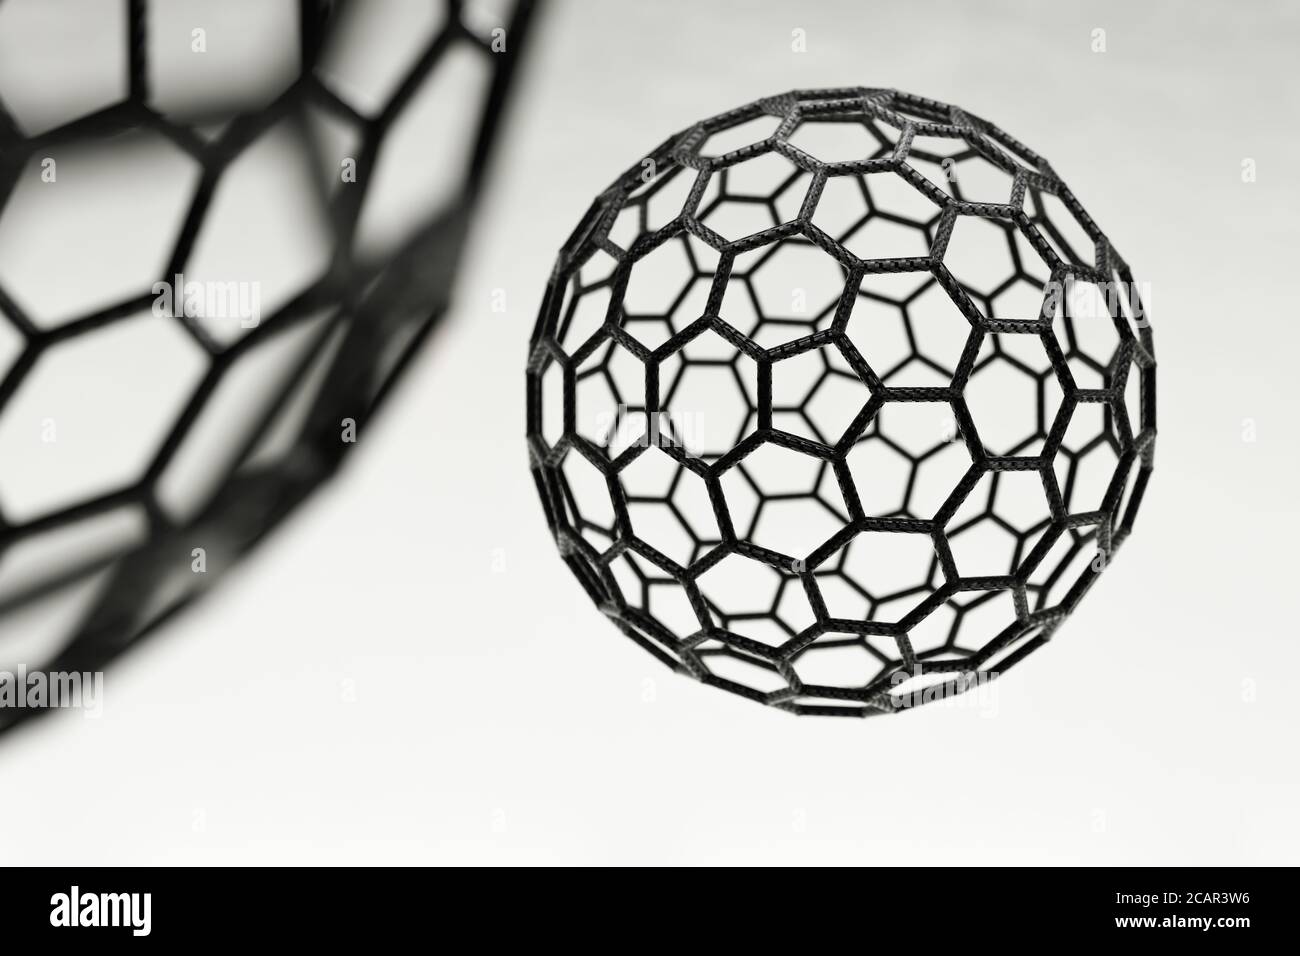 3D rendering of fullerene ball on white background Stock Photo